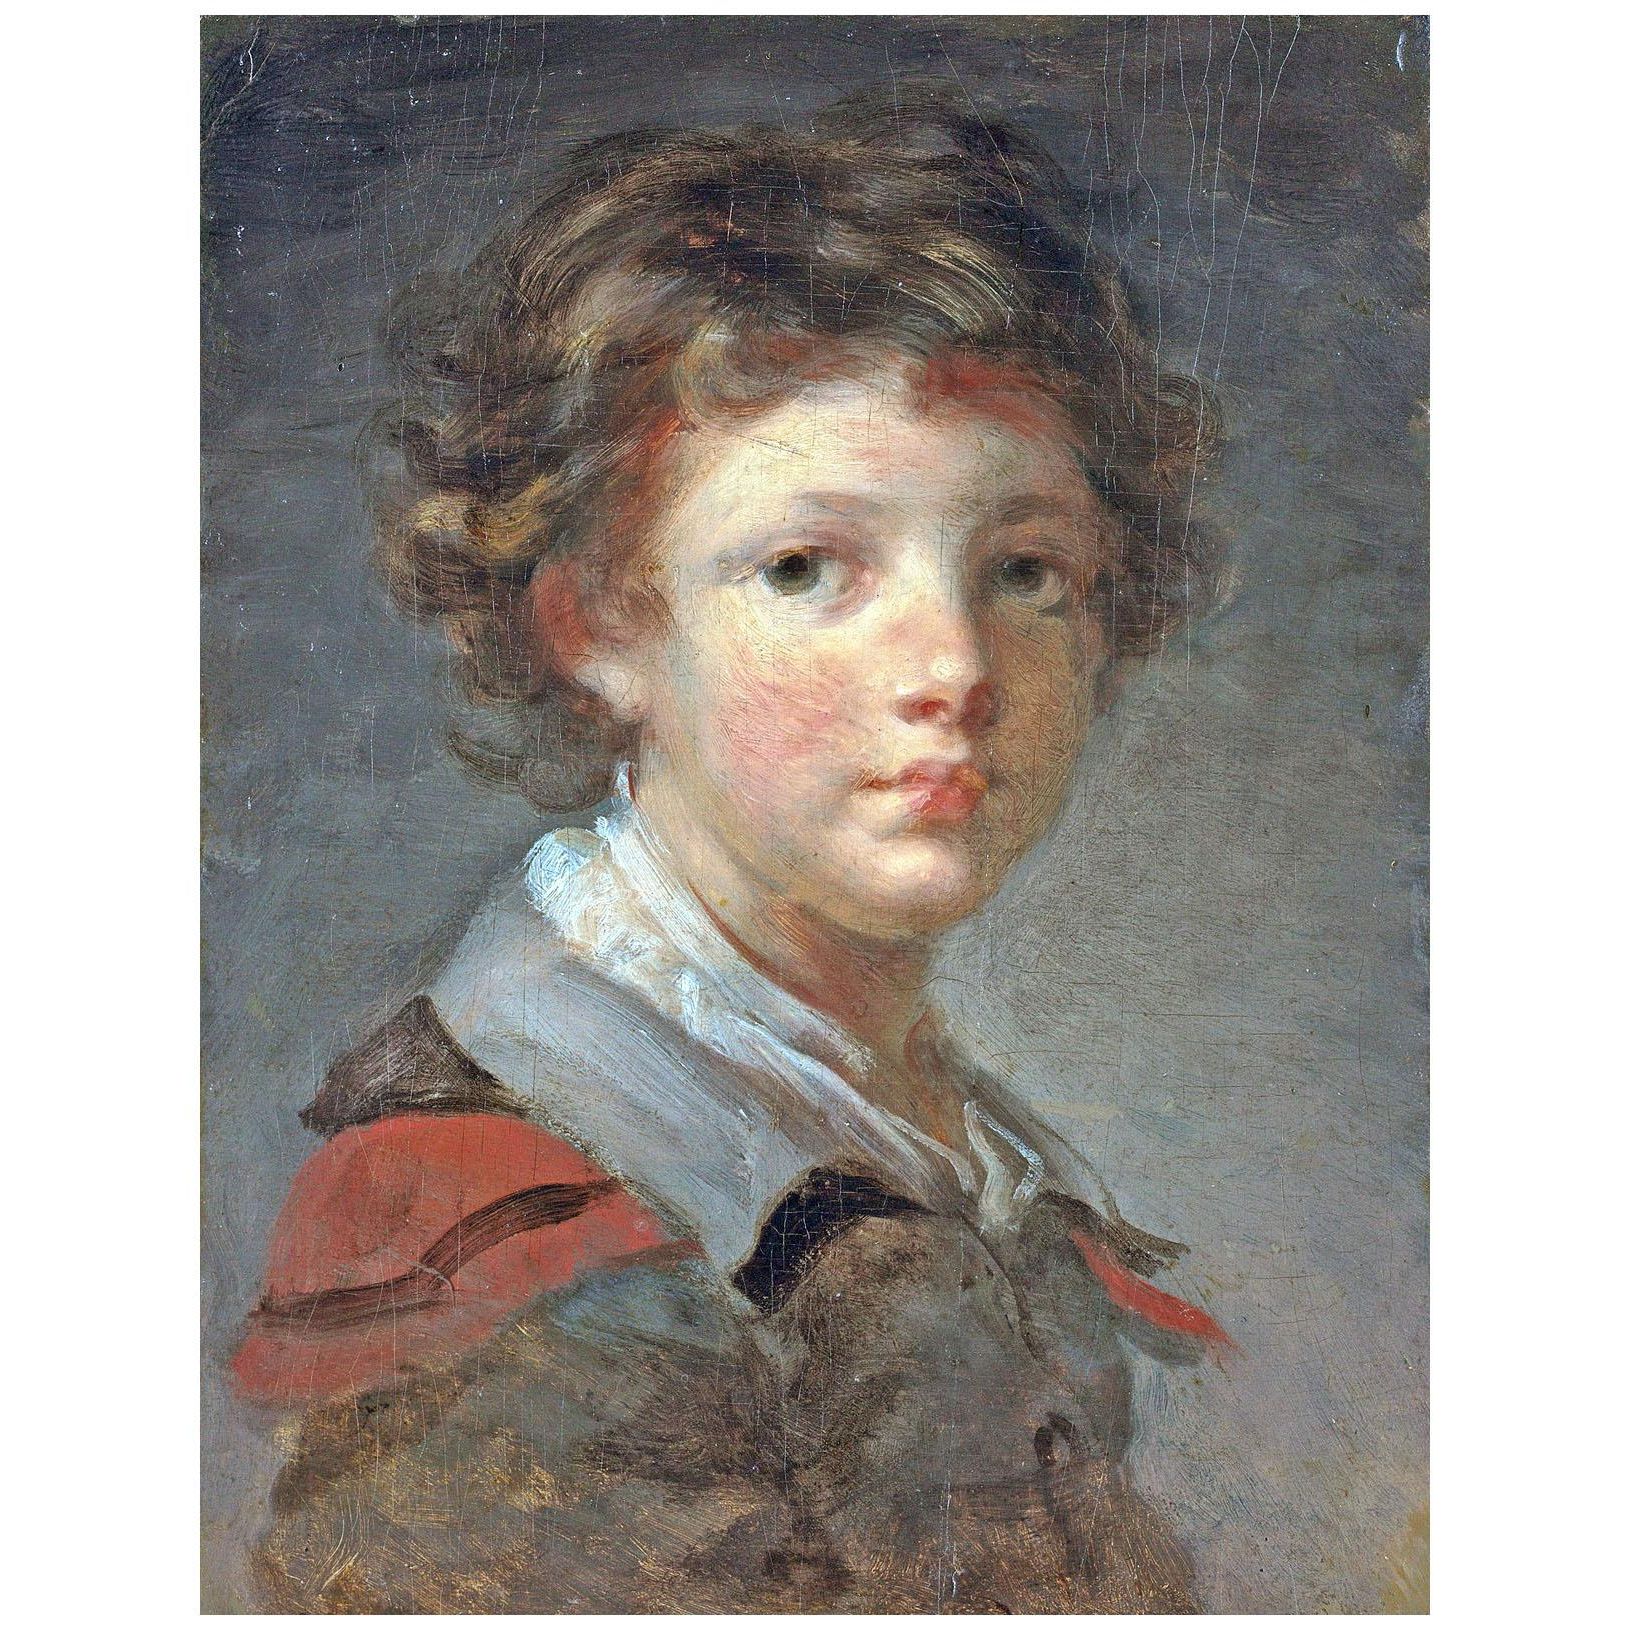 Jean Honore Fragonard. Un Garçon dans un manteau. 1780. Cleveland Museum of Art